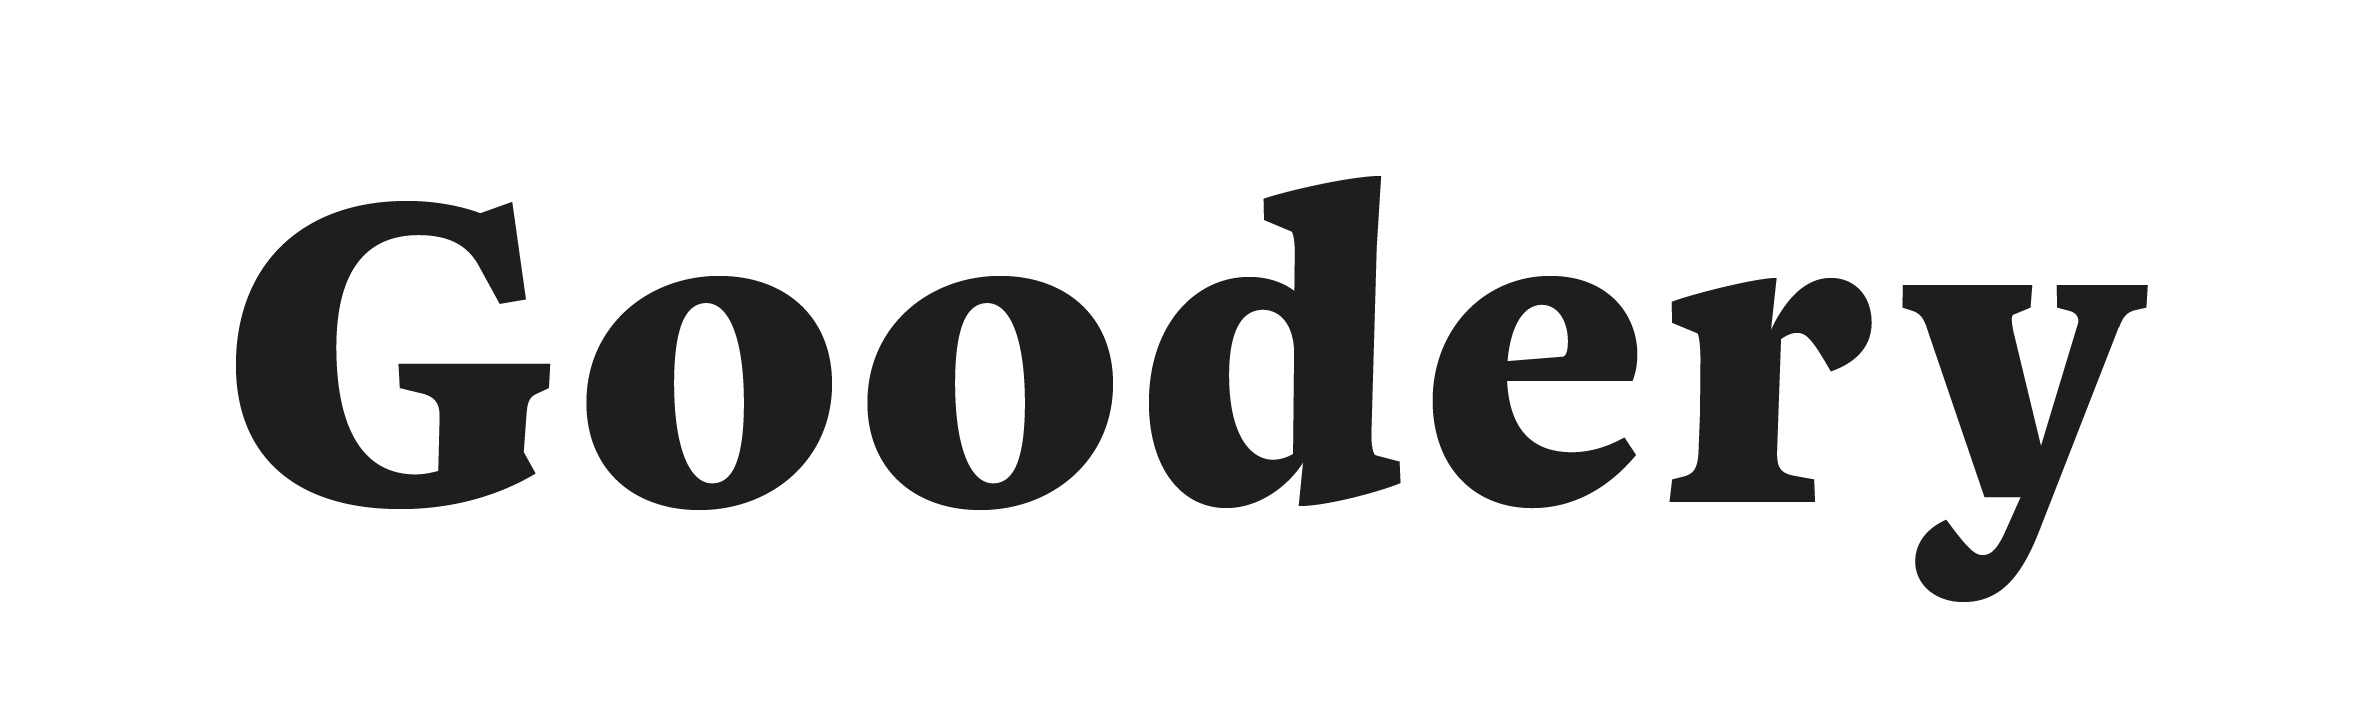 Linked logo for Goodery Ltd